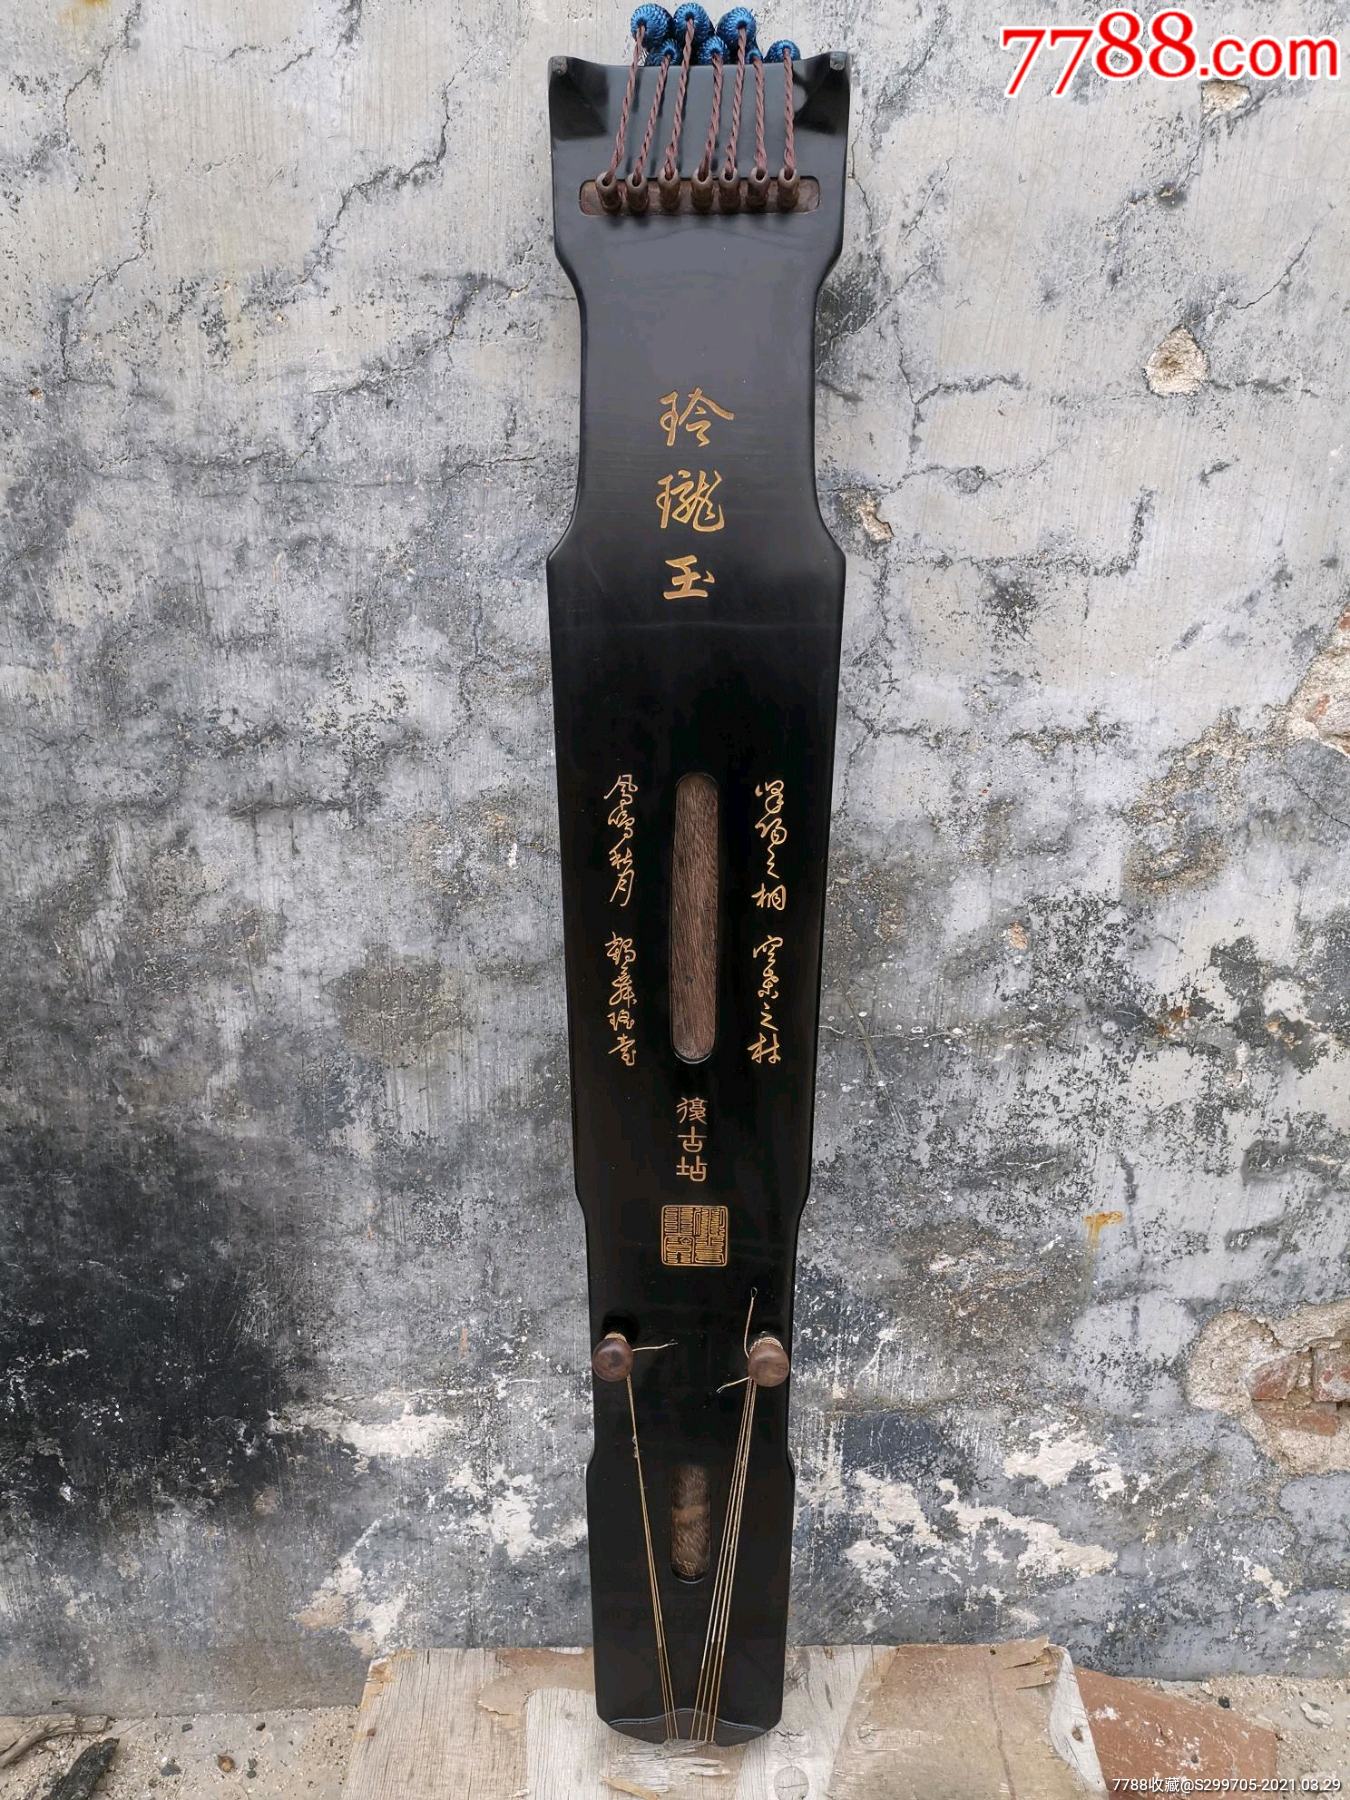 "玲珑玉"古琴仲尼式通长118.4cm,隐间110.7cm,额宽17.